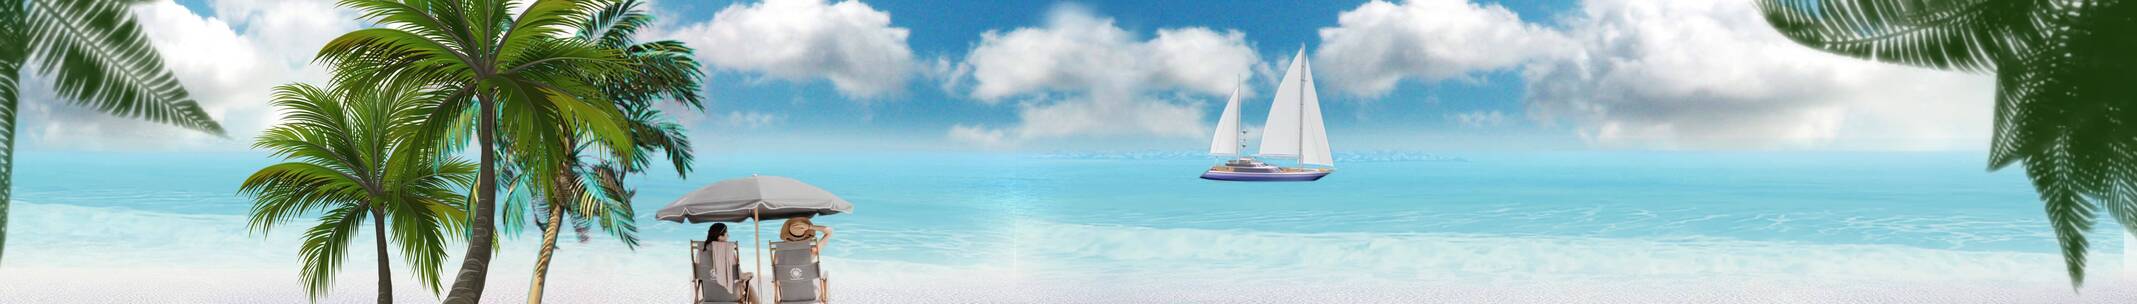 恋人海滩 海上冲浪 帆船出海 蓝天白云